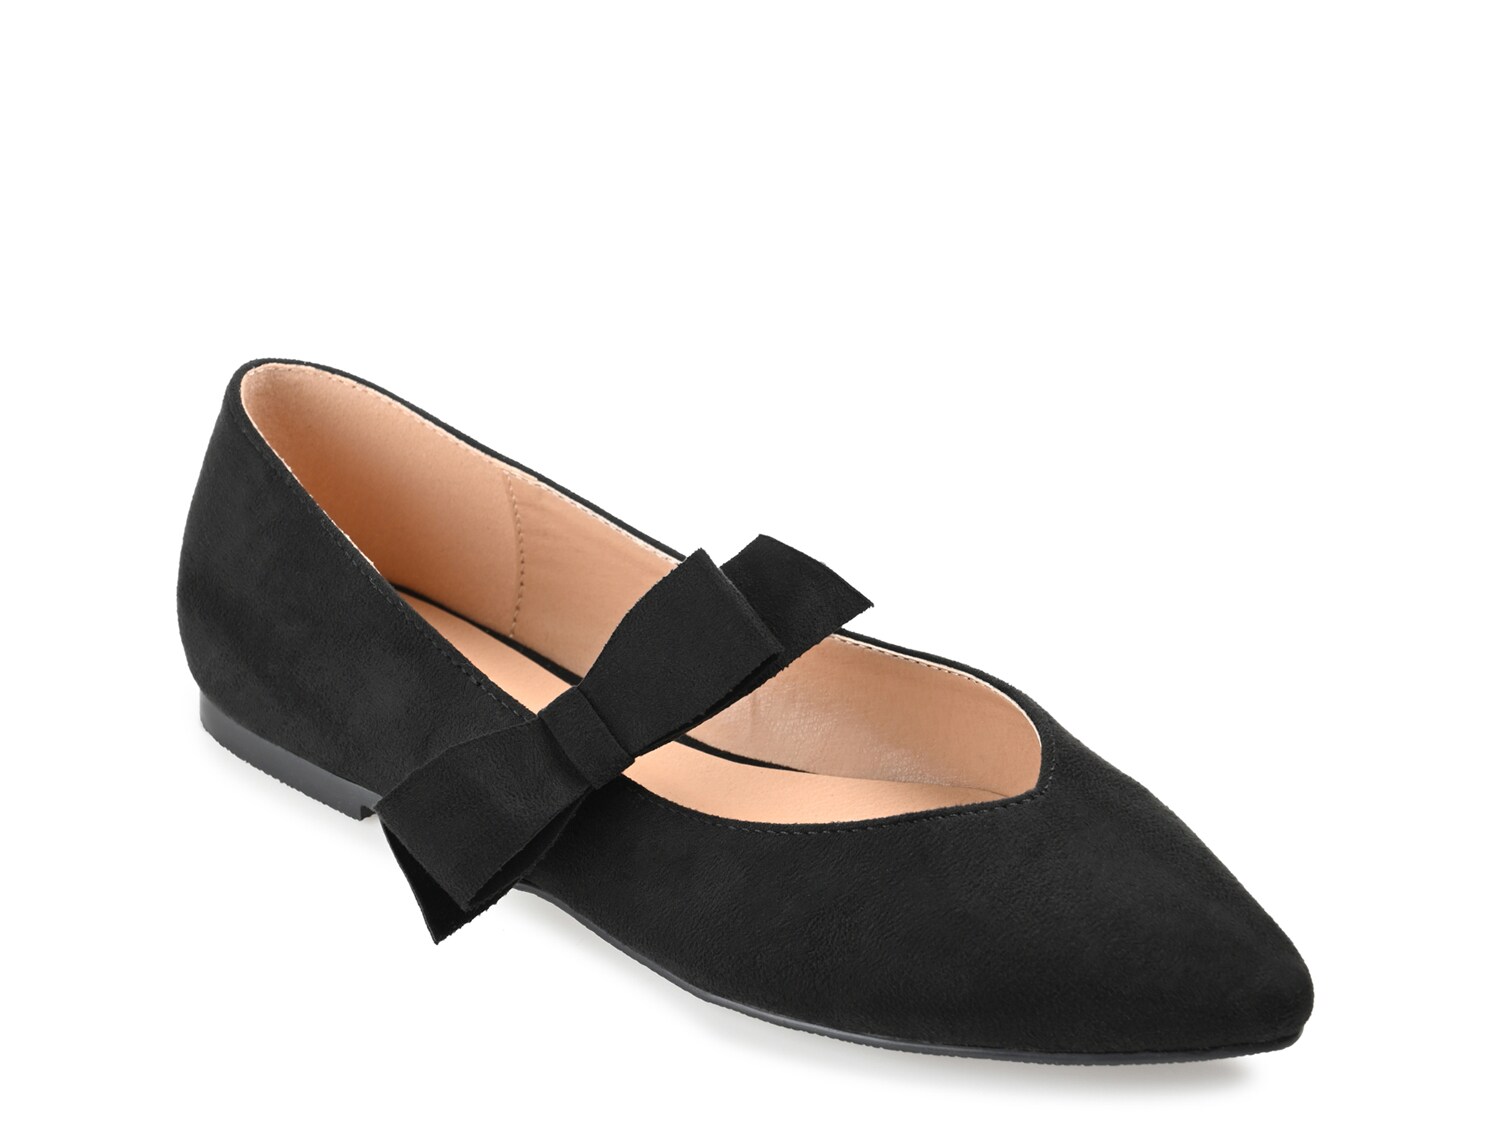 Балетки Journee Collection Aizlynn, черный туфли на плоской подошве sas eden comfort mary jane цвет resin